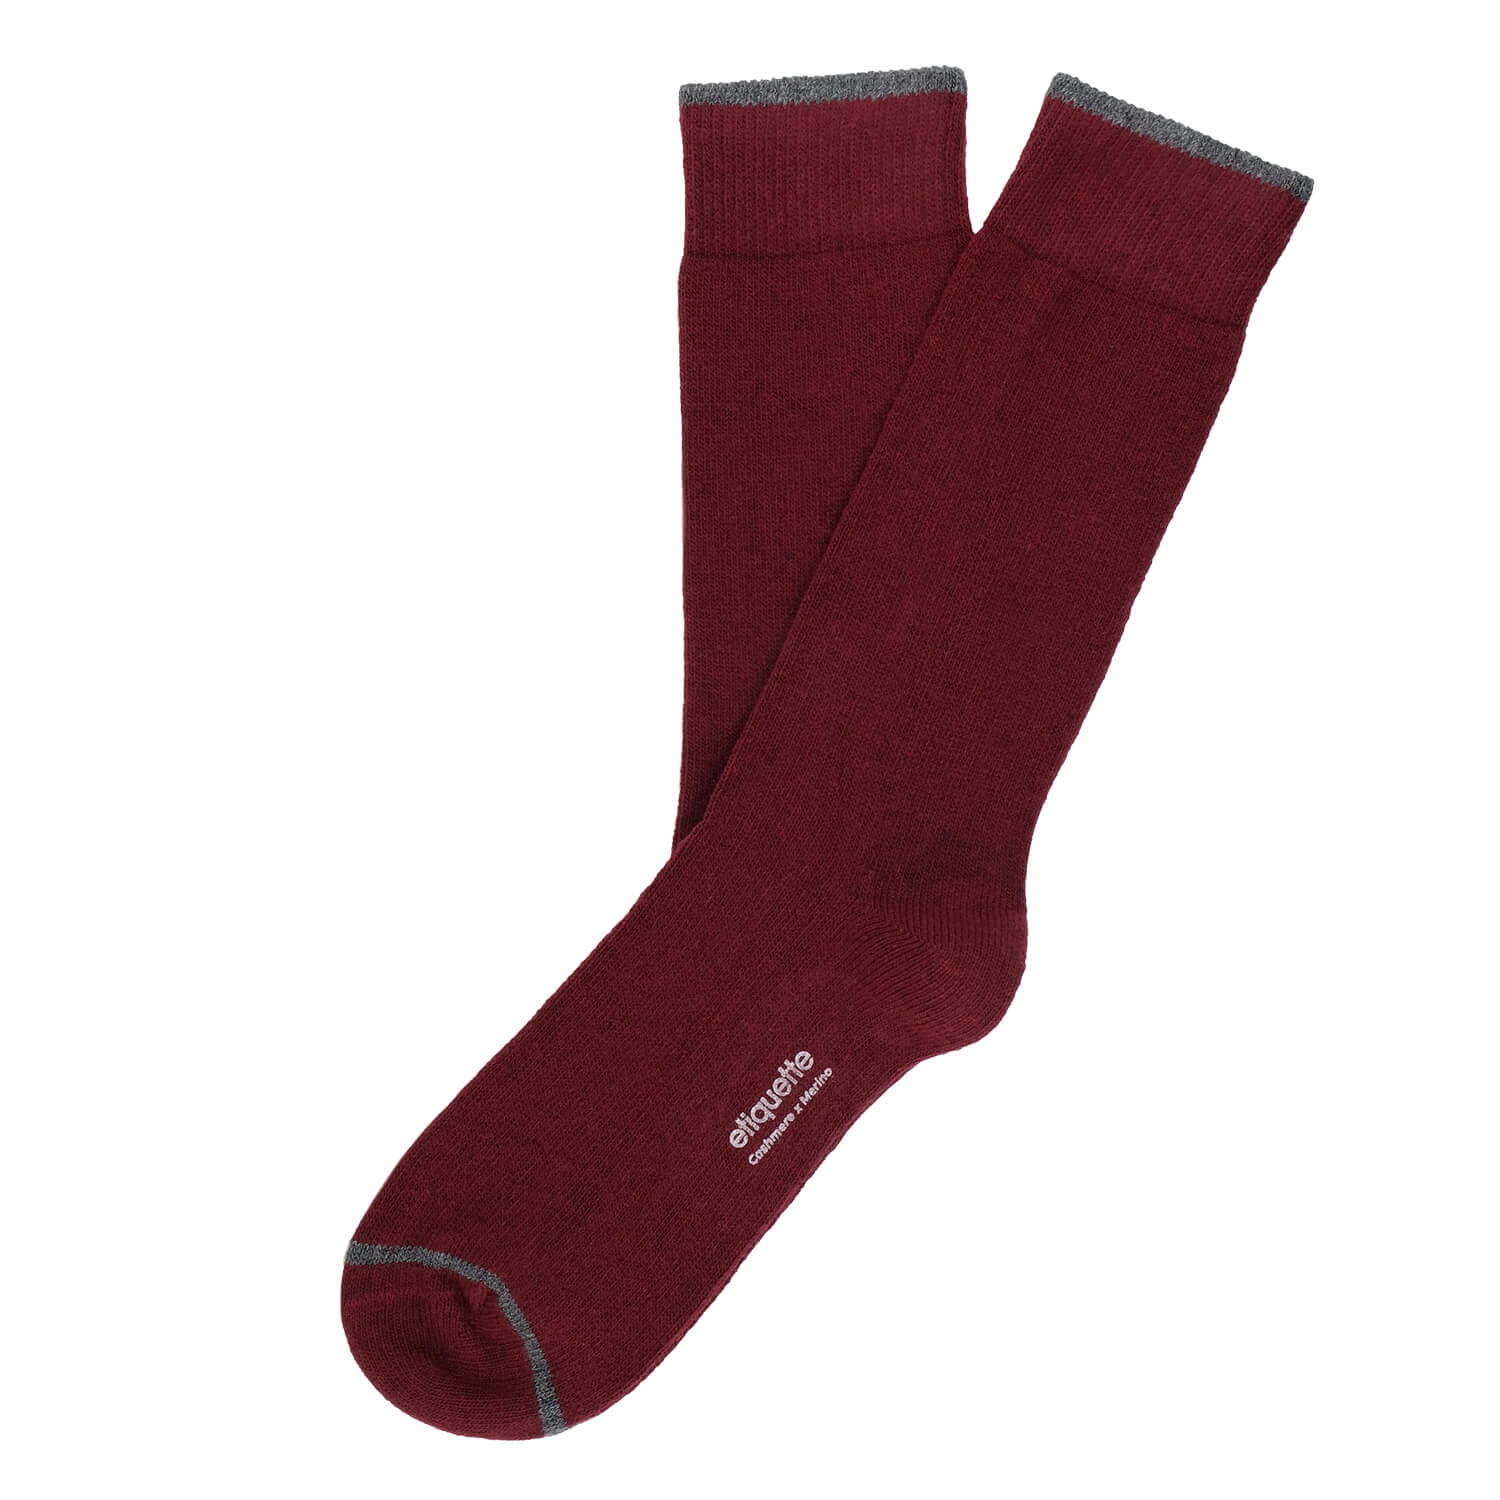 Mens Socks - Cashmere x Merino Men's Socks - Bordeaux⎪Etiquette Clothiers